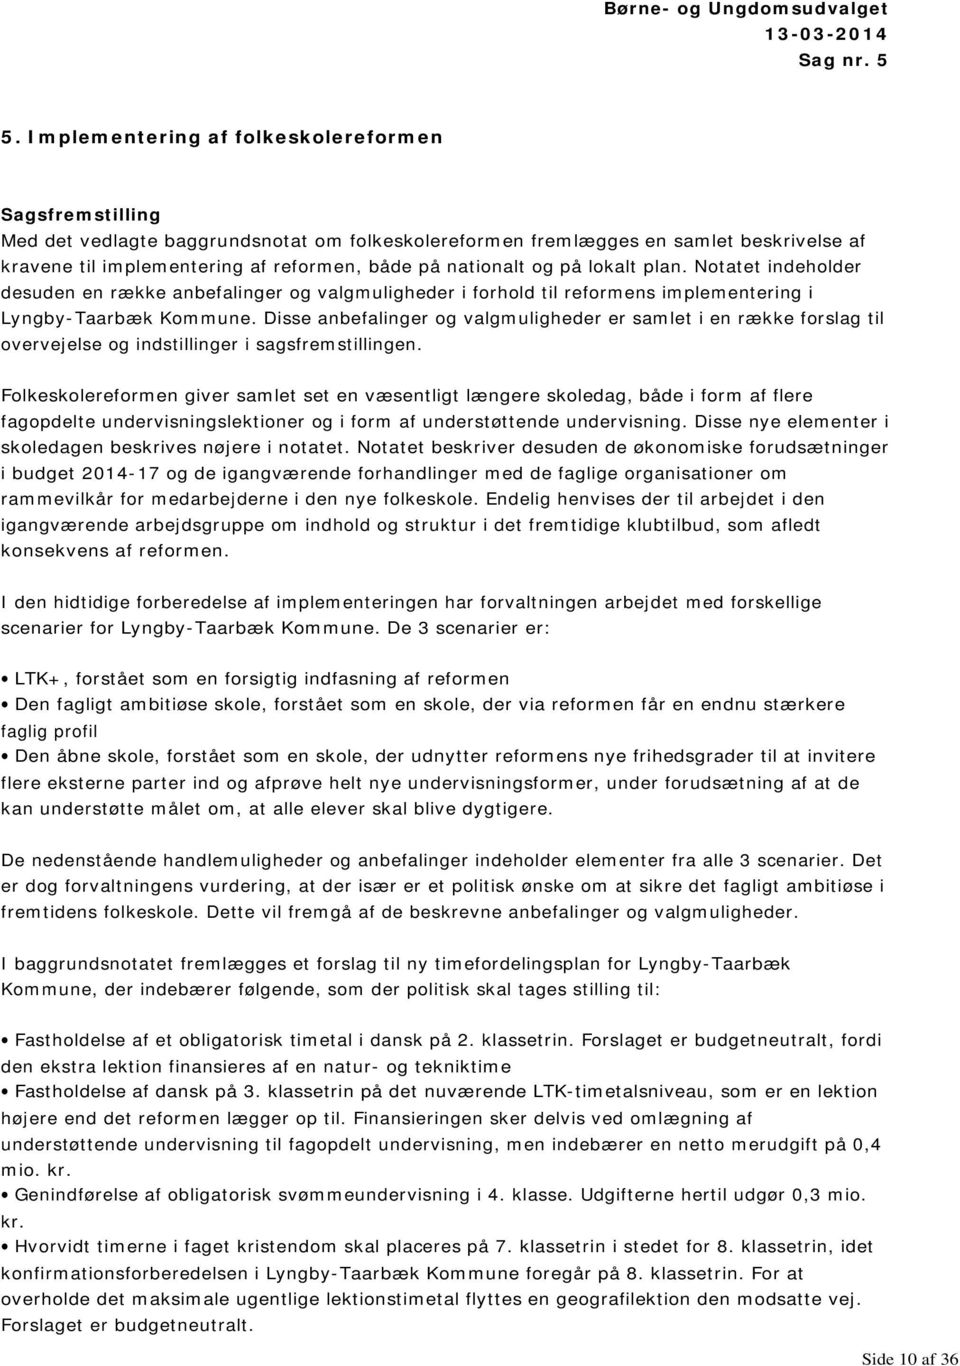 nationalt og på lokalt plan. Notatet indeholder desuden en række anbefalinger og valgmuligheder i forhold til reformens implementering i Lyngby-Taarbæk Kommune.